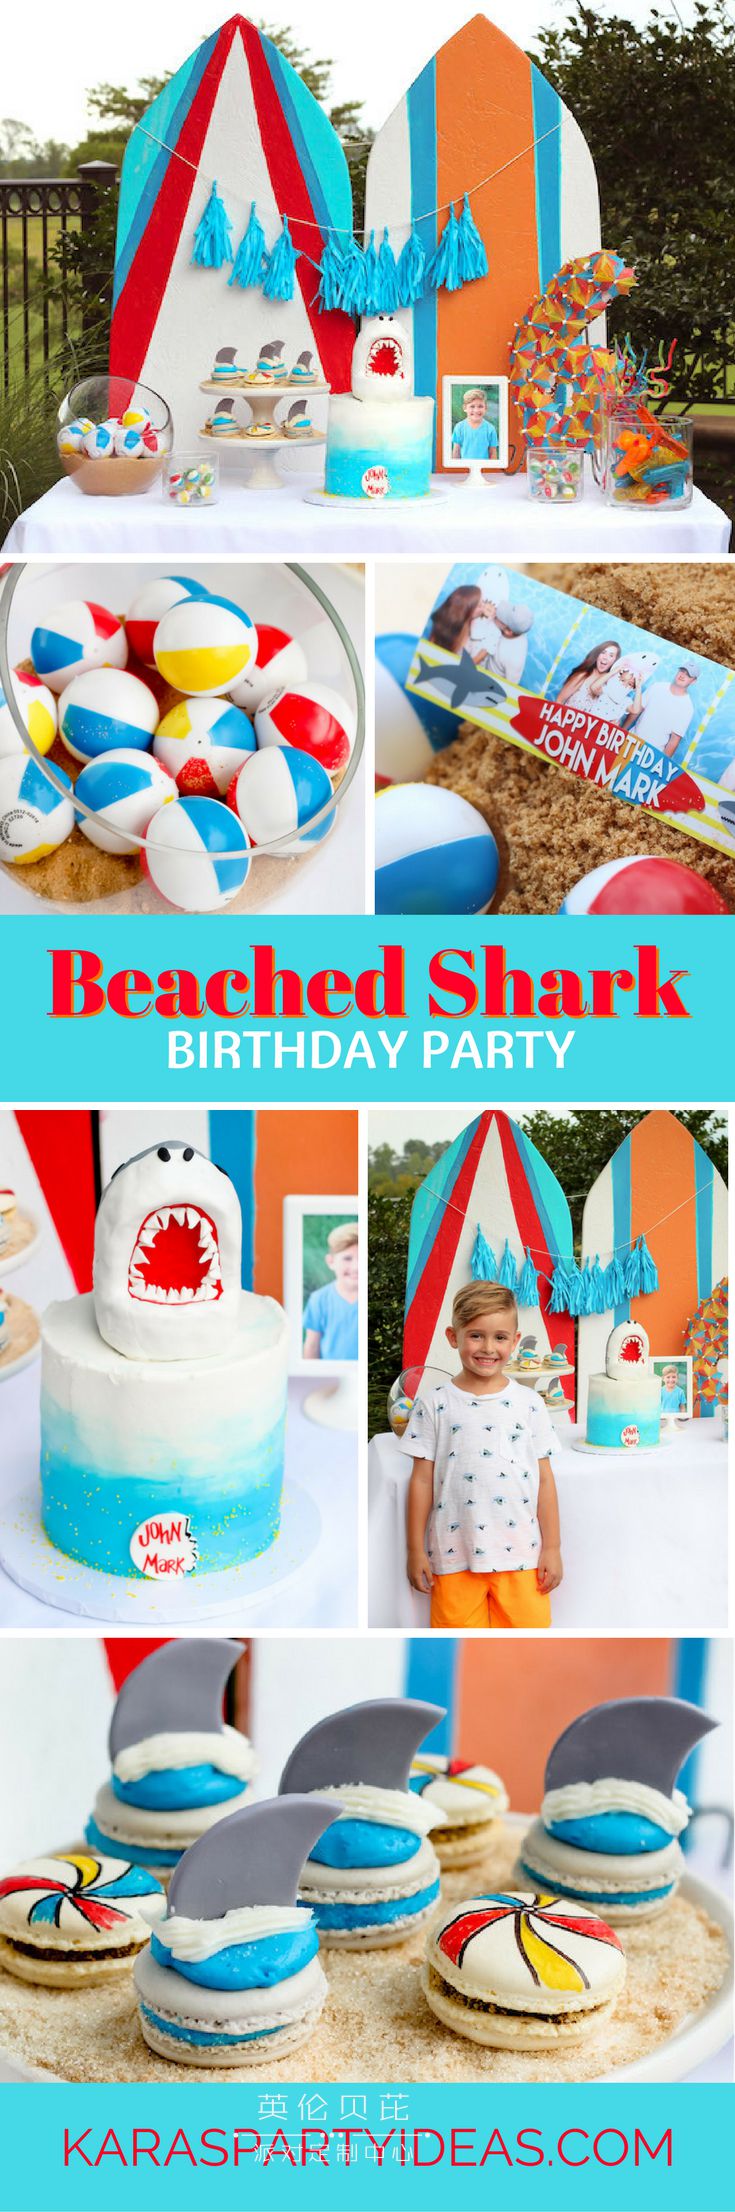 沙滩鲨鱼生日派对